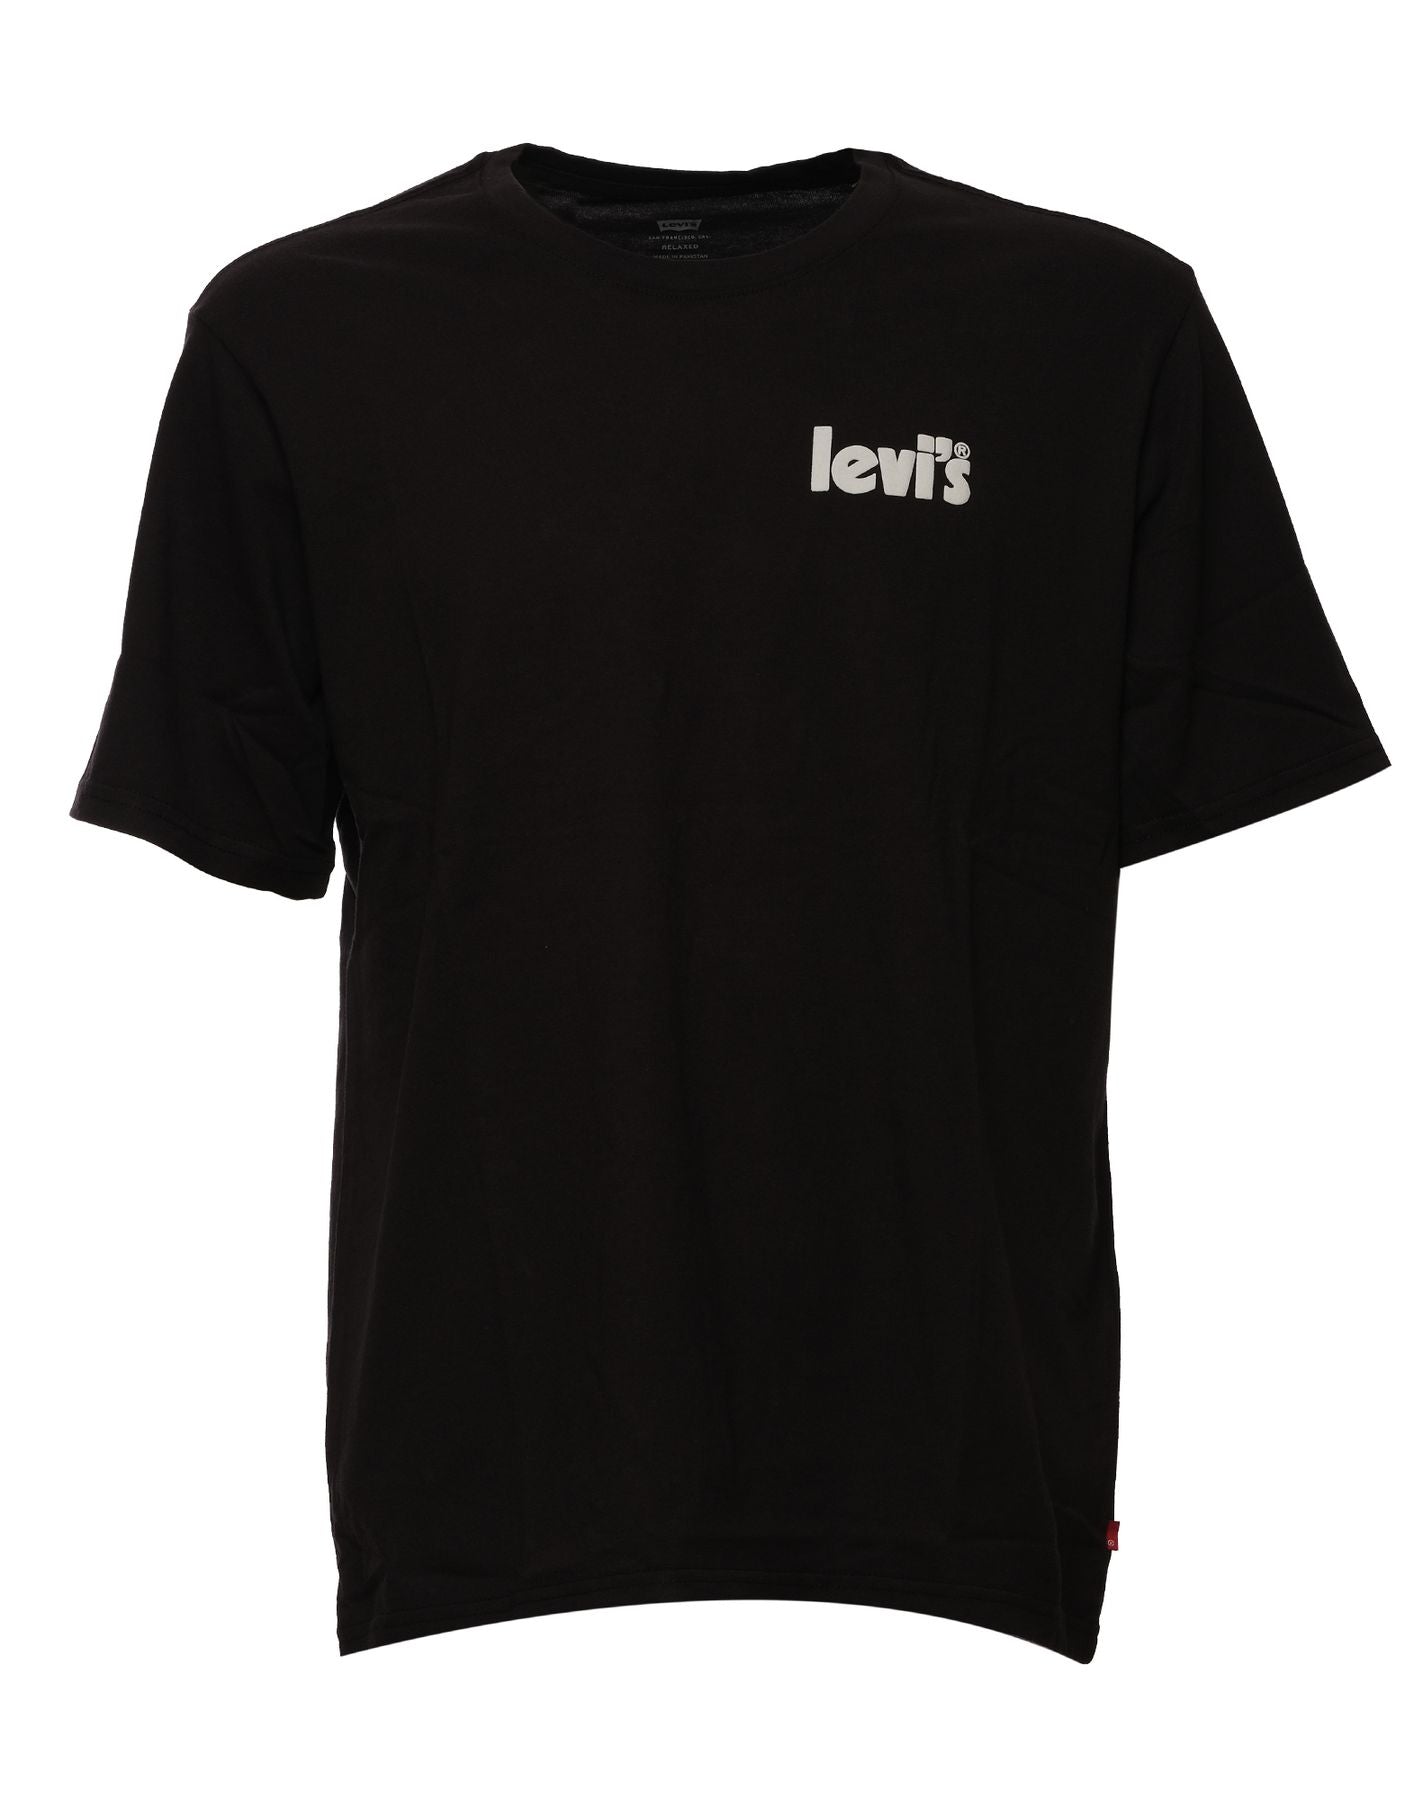 T-shirt pour homme 16143 0837 CAVIAR Levi's